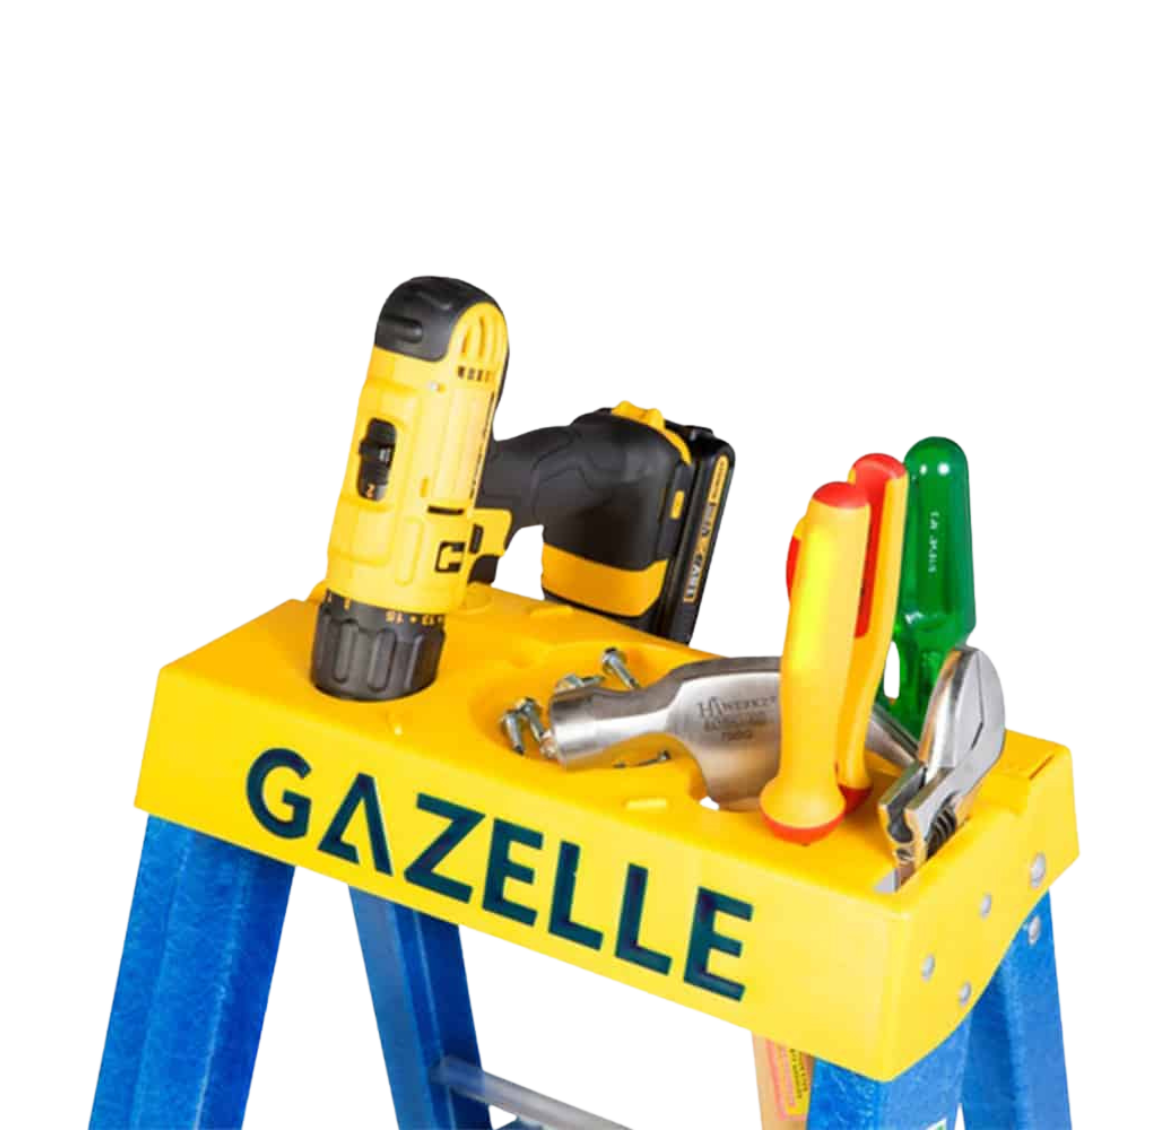 gazelle-g3006-fiberglass